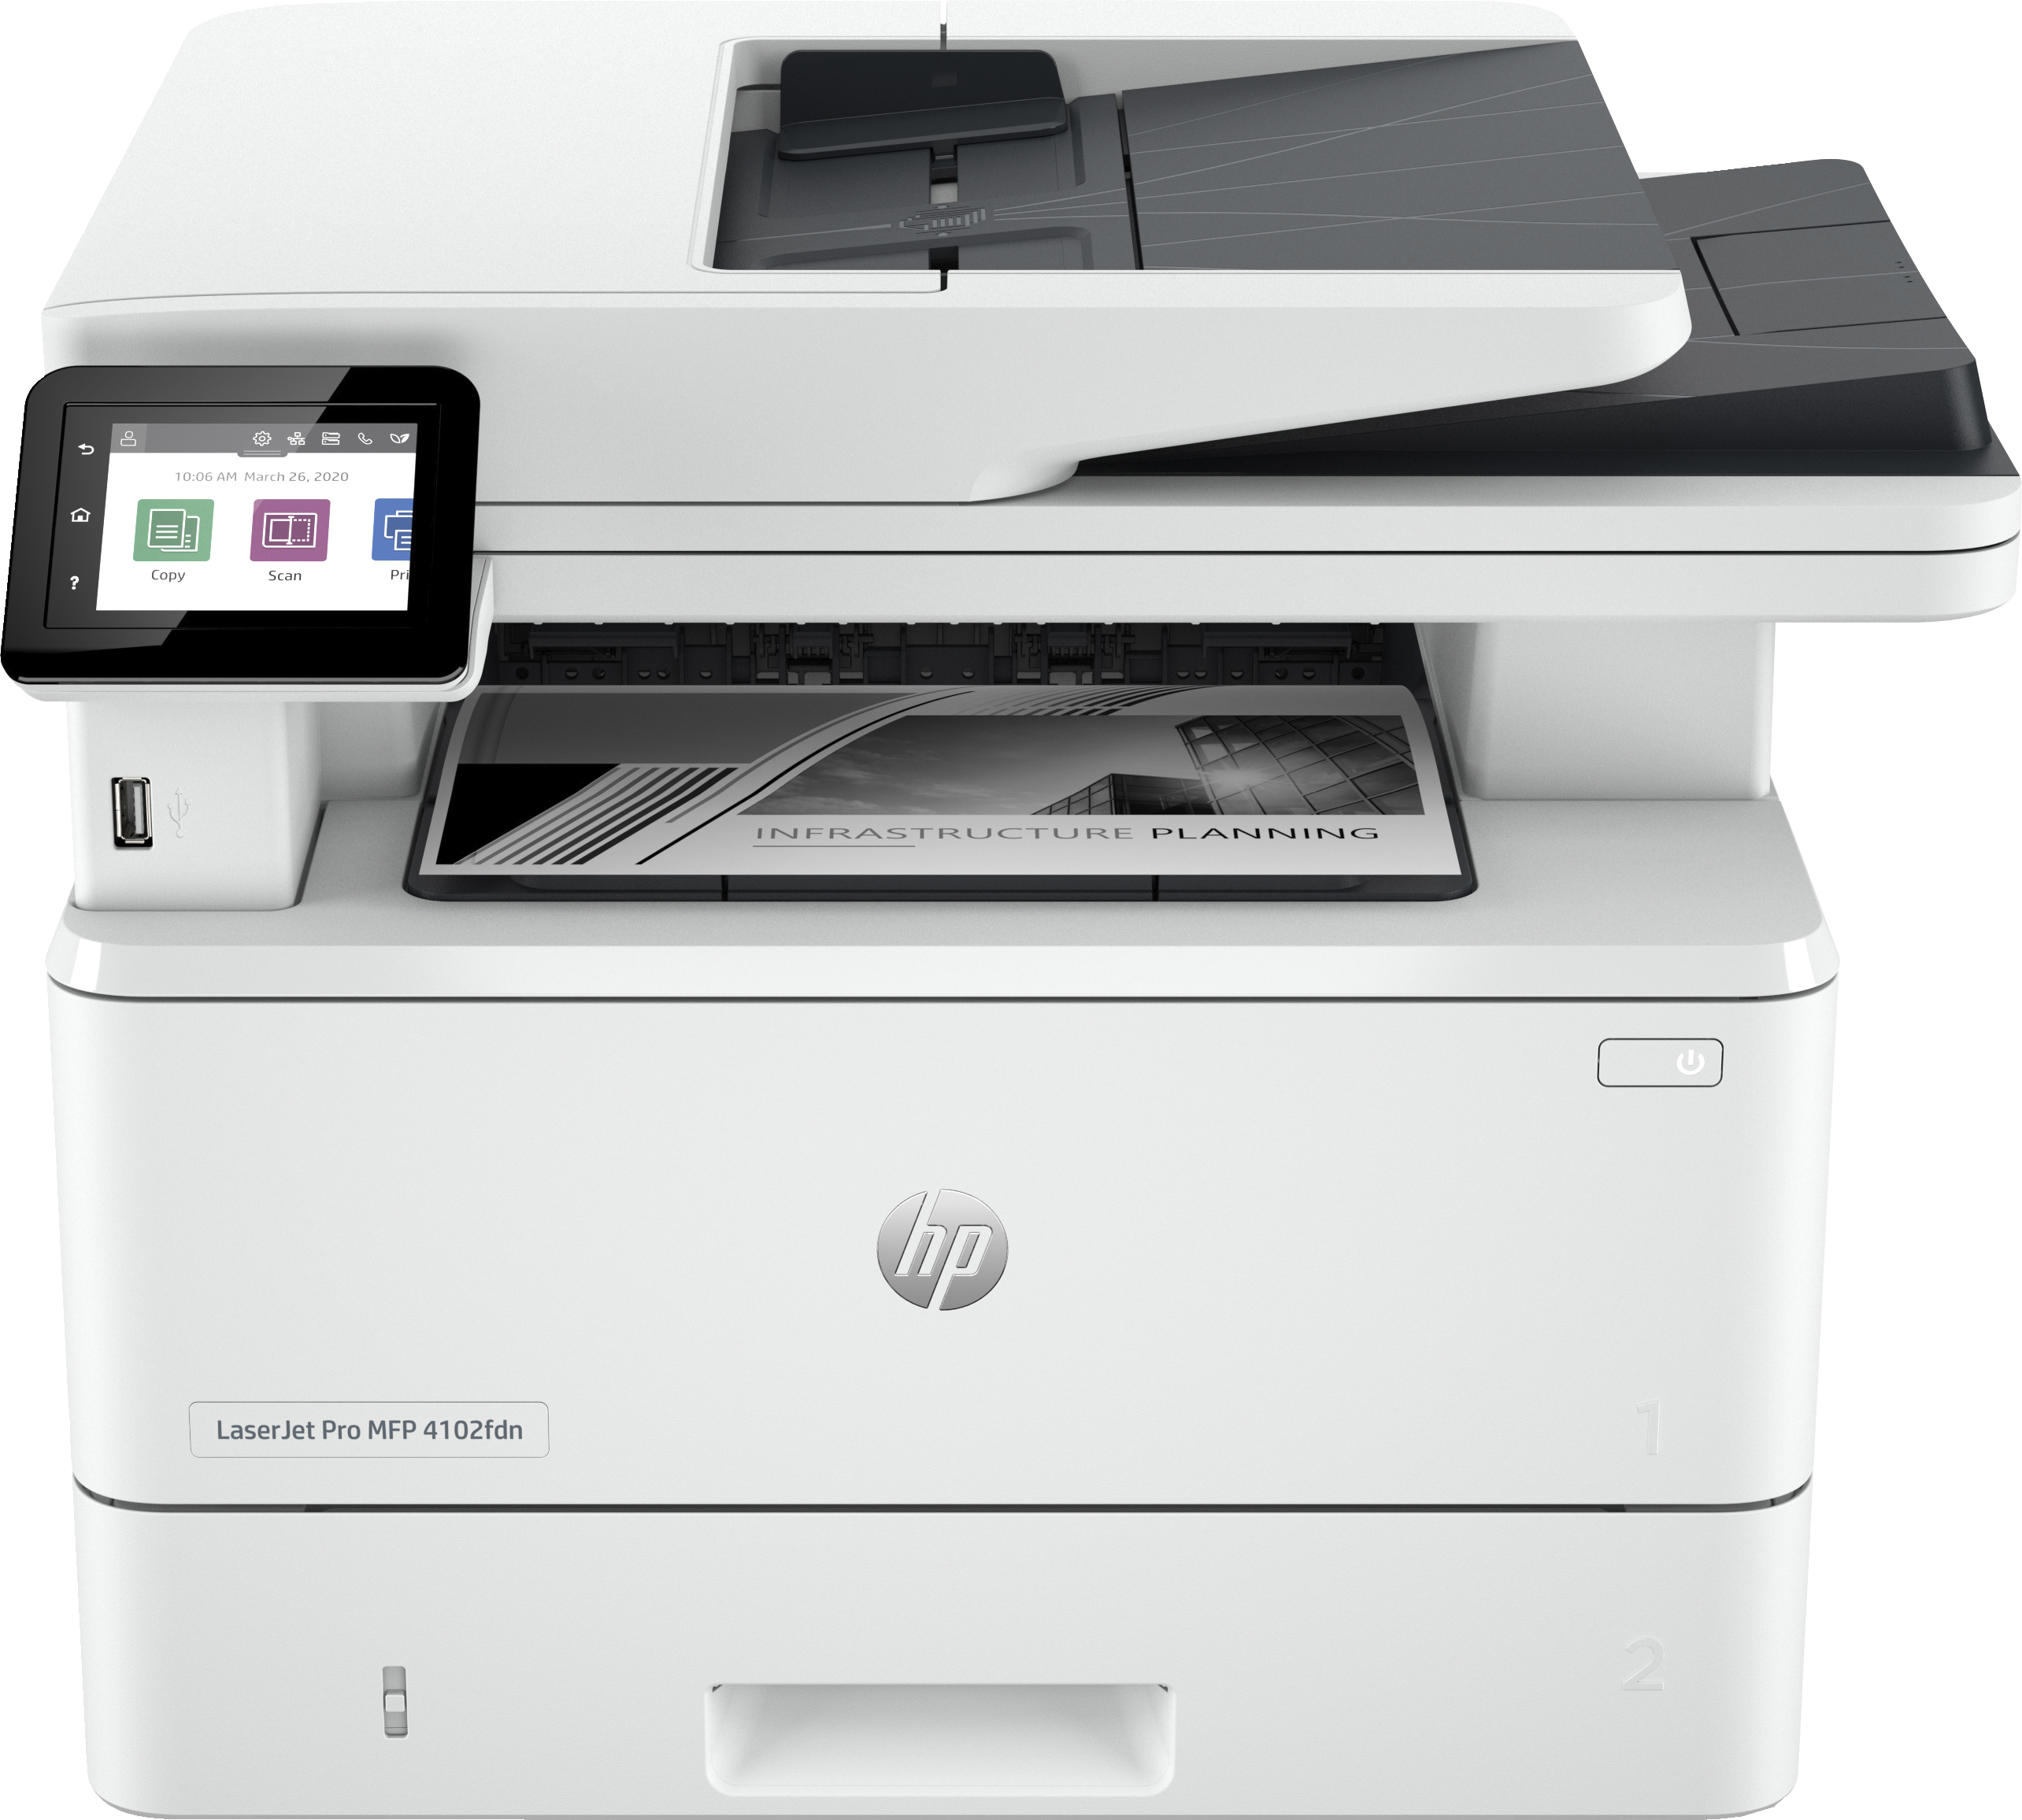 HP HP LaserJet Pro MFP 4102fdn printer, Zwart-wit, Printer voor Kleine en middelgrote ondernemingen, Printen, kopi&#235;ren, scannen, faxen, Geschikt voor HP Instant Ink; printen vanaf telefoon of tablet; Automatische documentinvoer; Dubbelzijdig printen